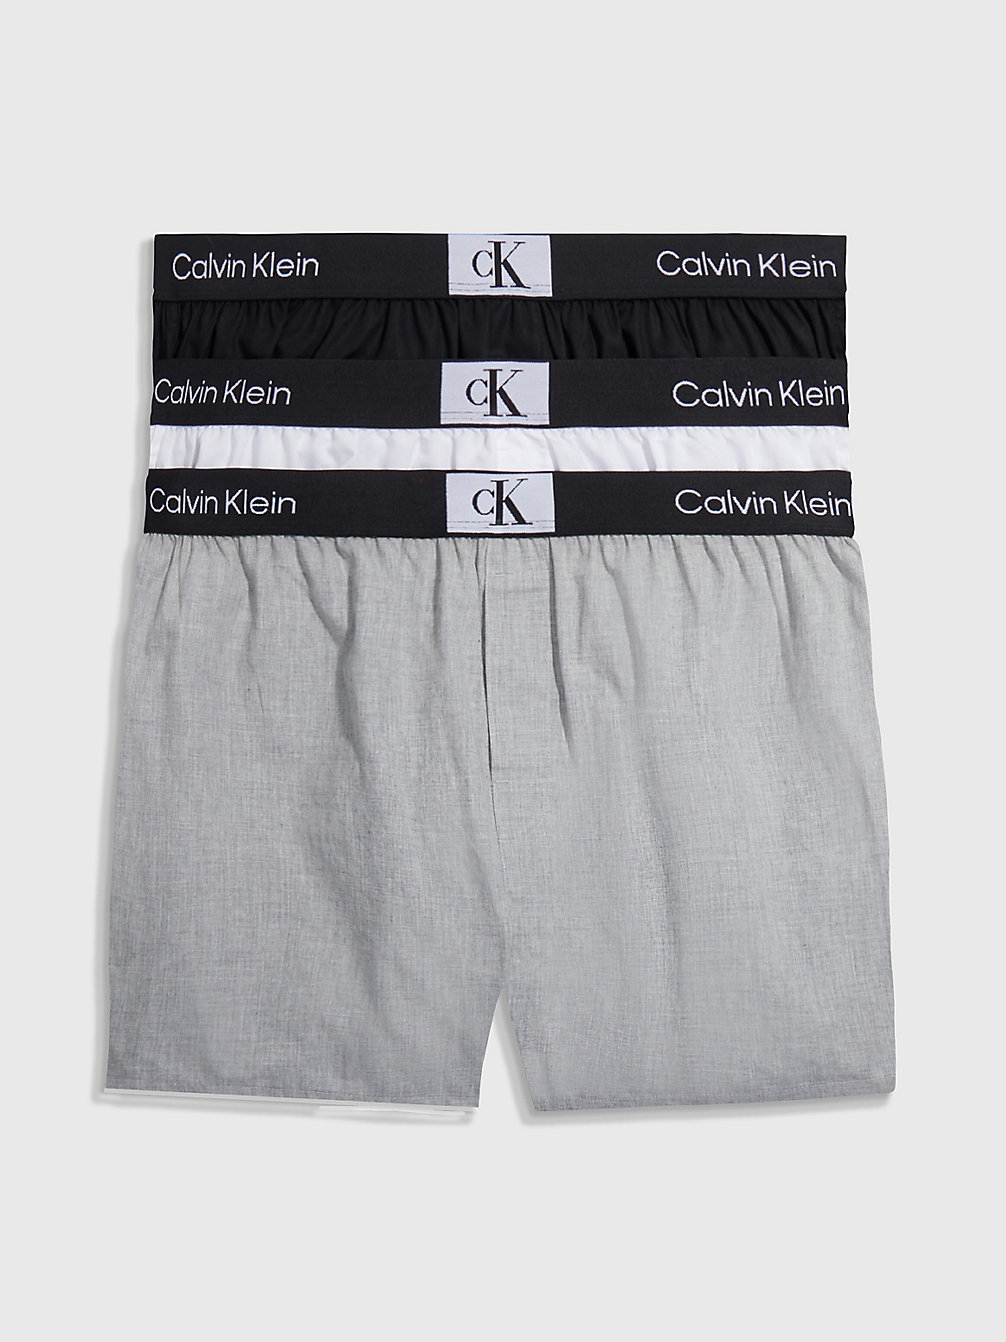 BLACK/WHITE/GREY HEATHER 3-Pack Slim Fit Boxershorts - Ck96 undefined heren Calvin Klein